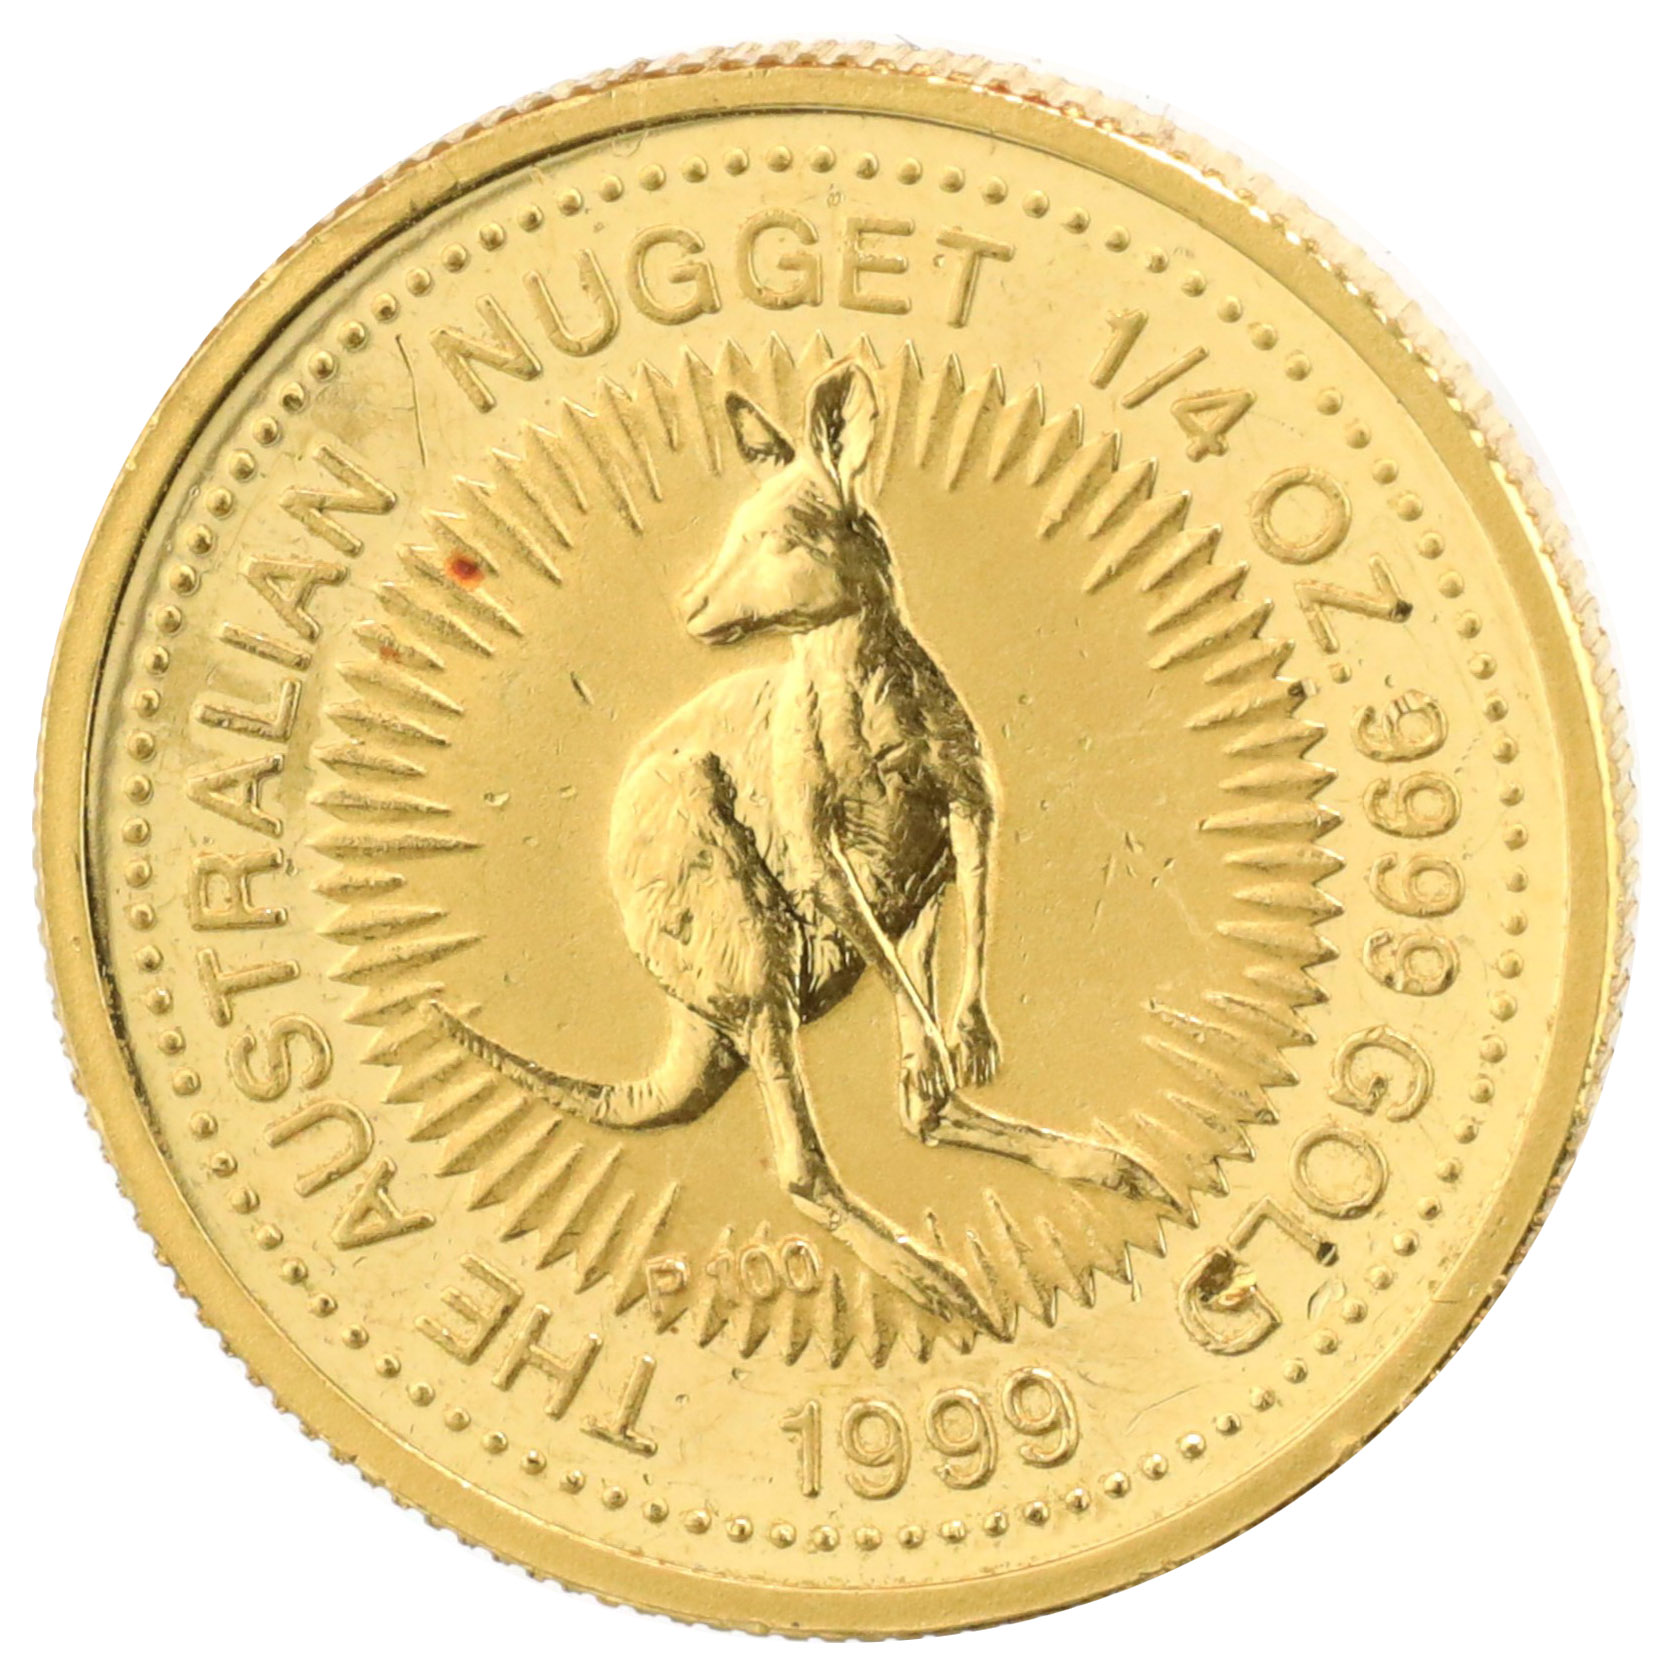 オーストラリア 1999年P1/4オンス 25ドル純金貨カンガルー エリザベス 